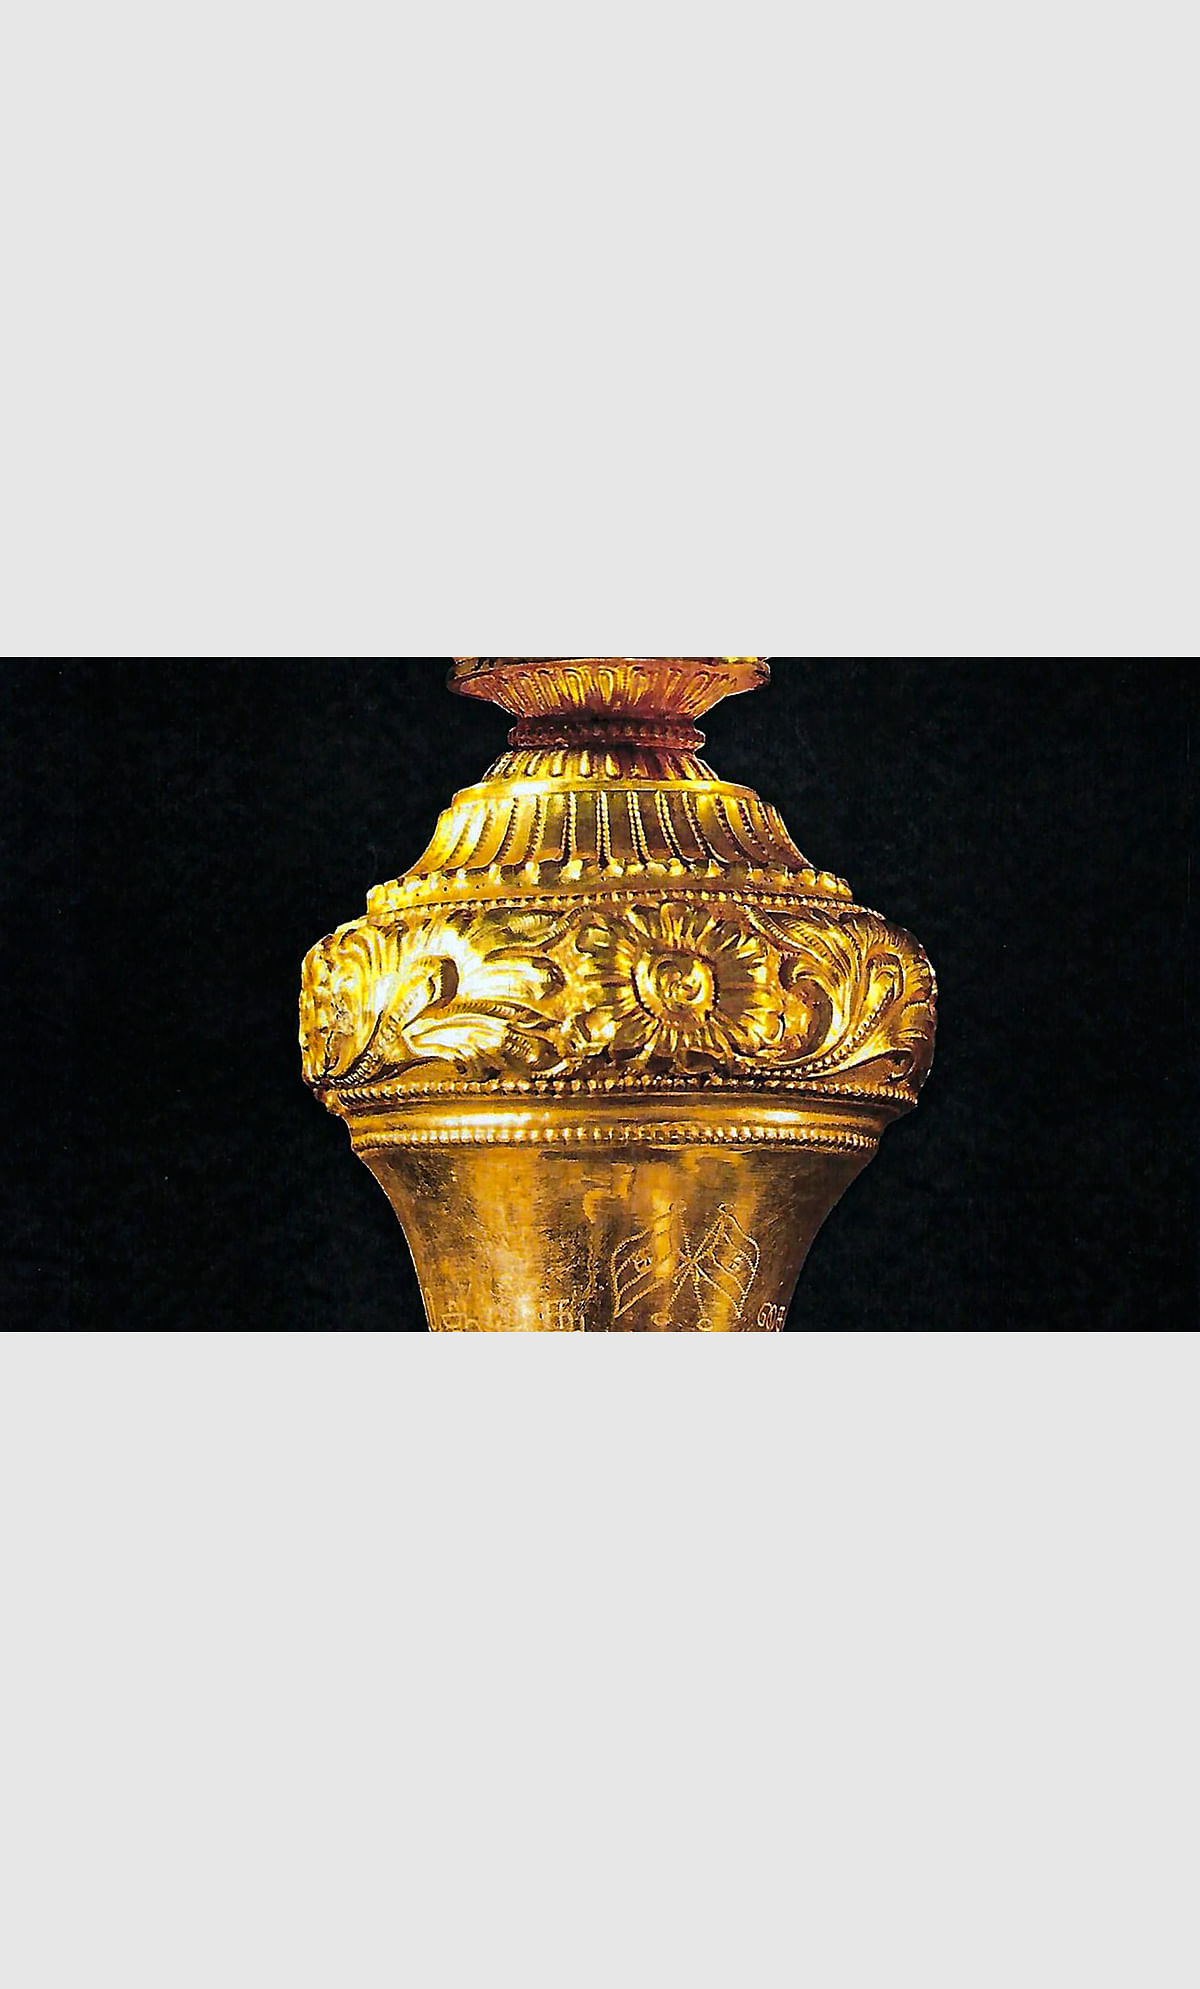 ಅಧಿಕಾರ ಹಸ್ತಾಂತರದ ಸಂಕೇತ 'ಸೆಂಗೋಲ್‌' ನ್ಯಾಯದಂಡದ ವೈಶಿಷ್ಟ್ಯಗಳು ಇಲ್ಲಿವೆ